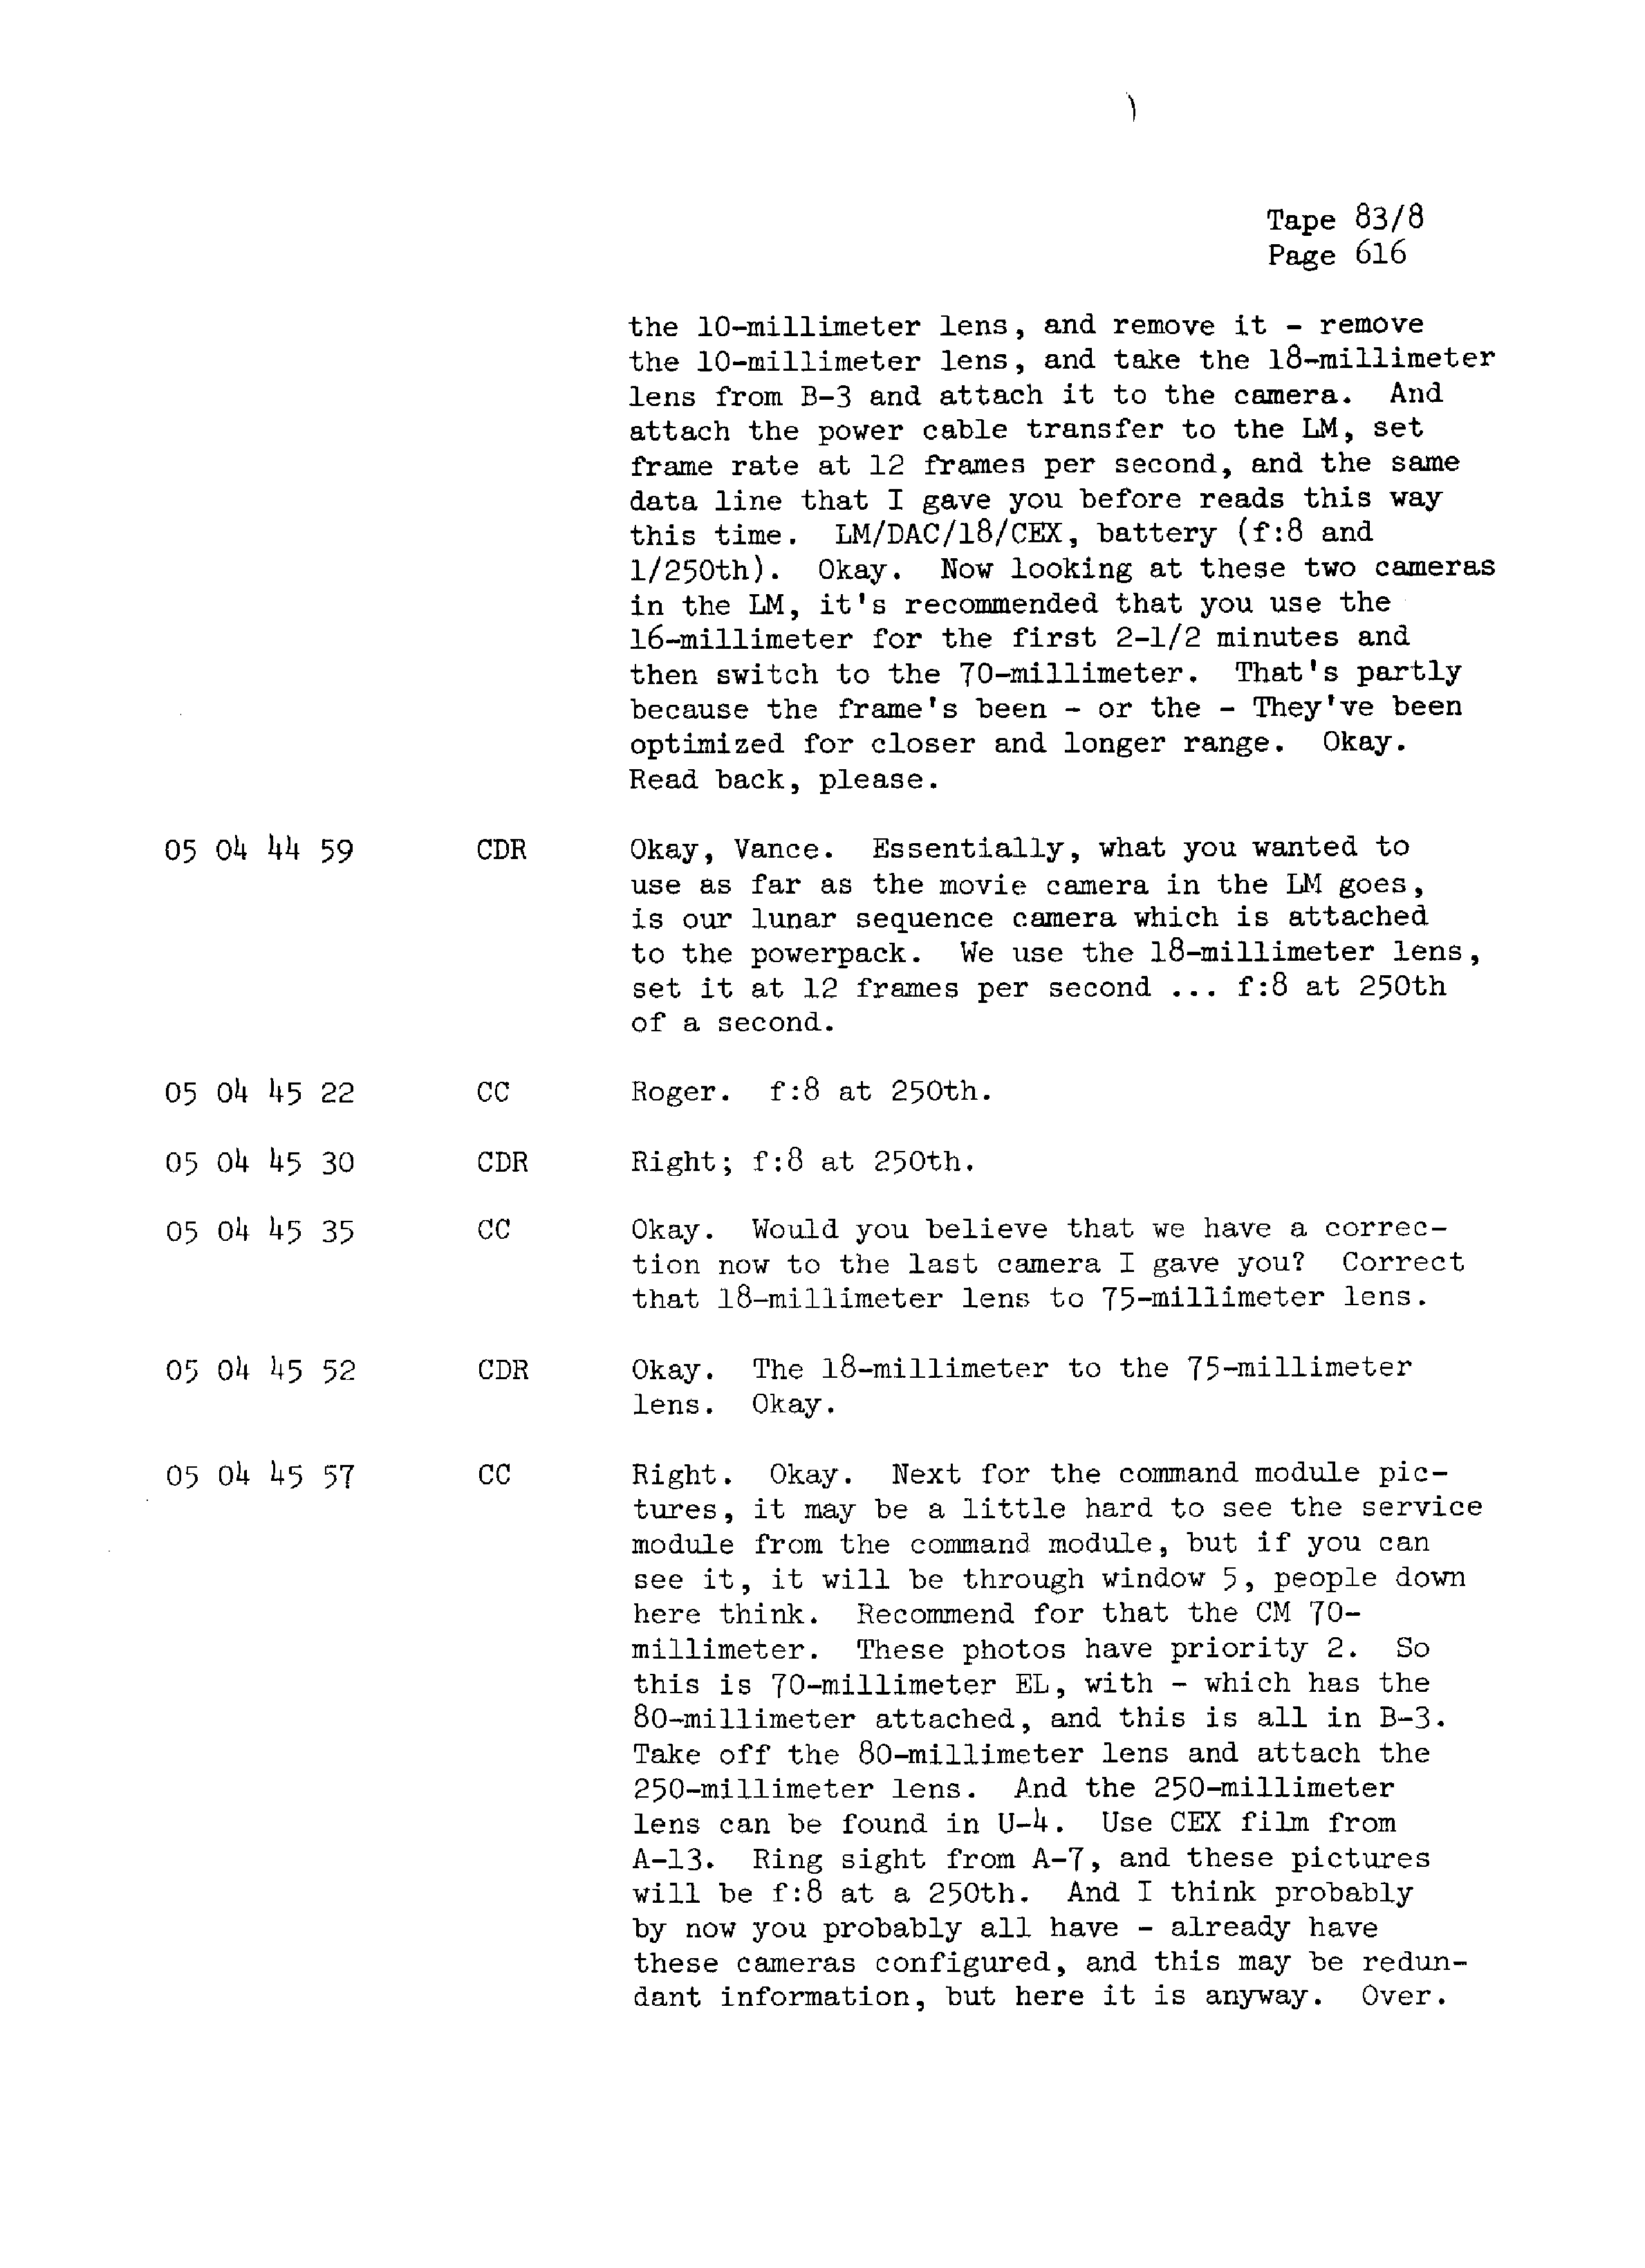 Page 623 of Apollo 13’s original transcript